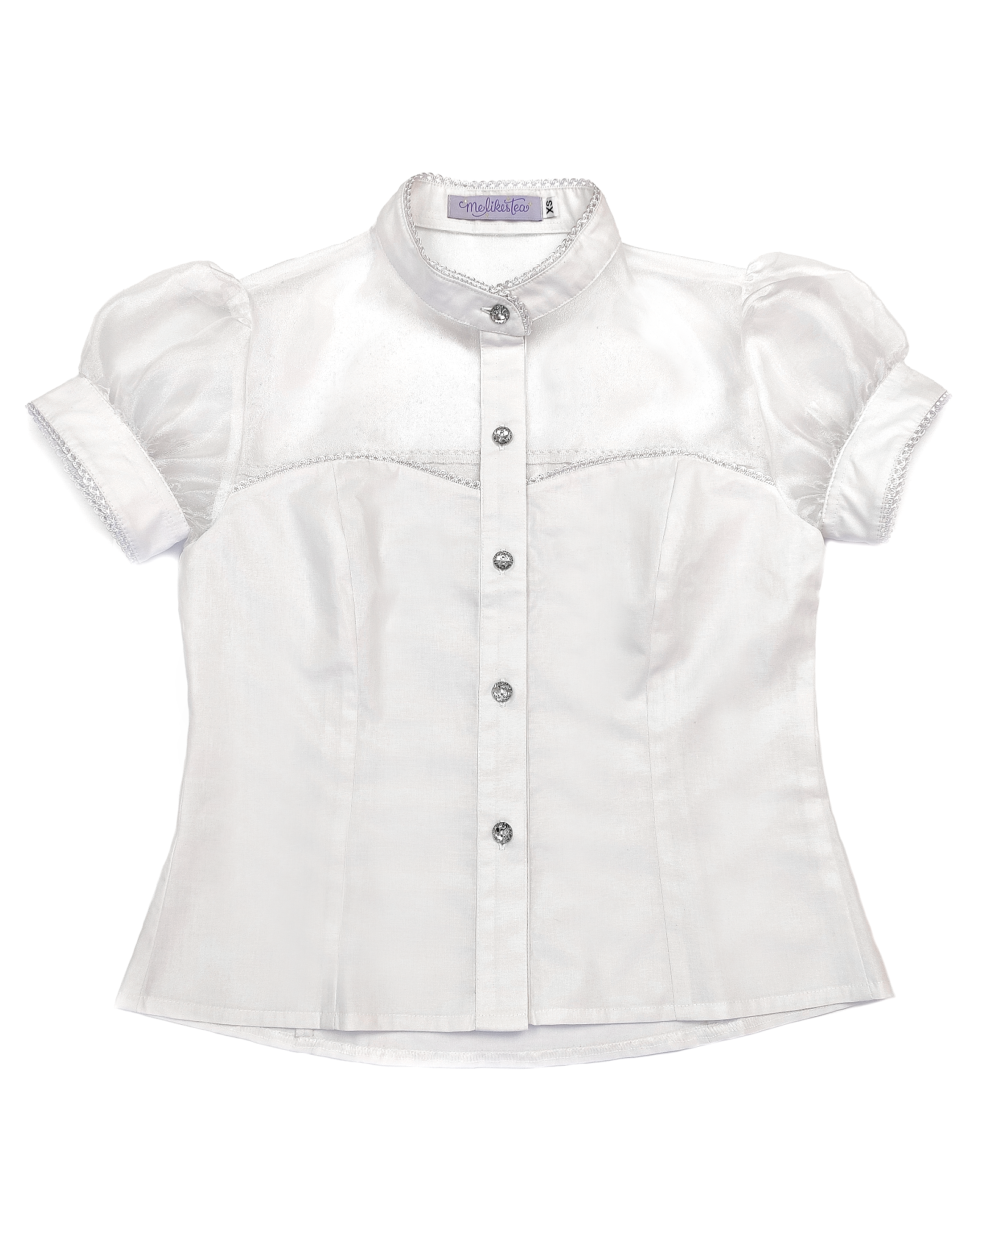 Glinda short sleeve blouse melikestea - white